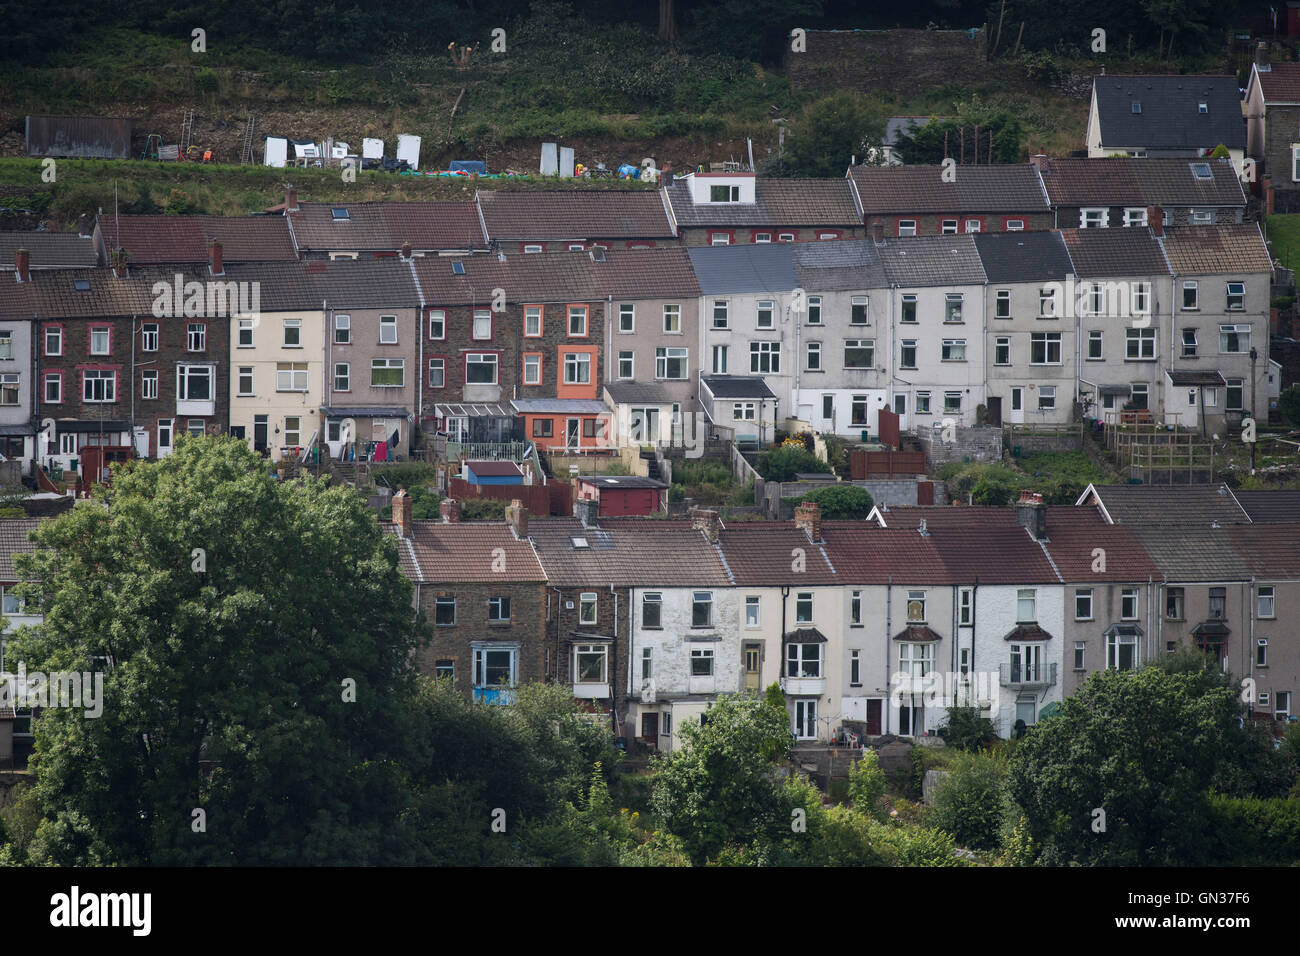 Eine Gesamtansicht der terrassenförmig angelegten Häuser in Pontypridd, South Wales, UK. Stockfoto